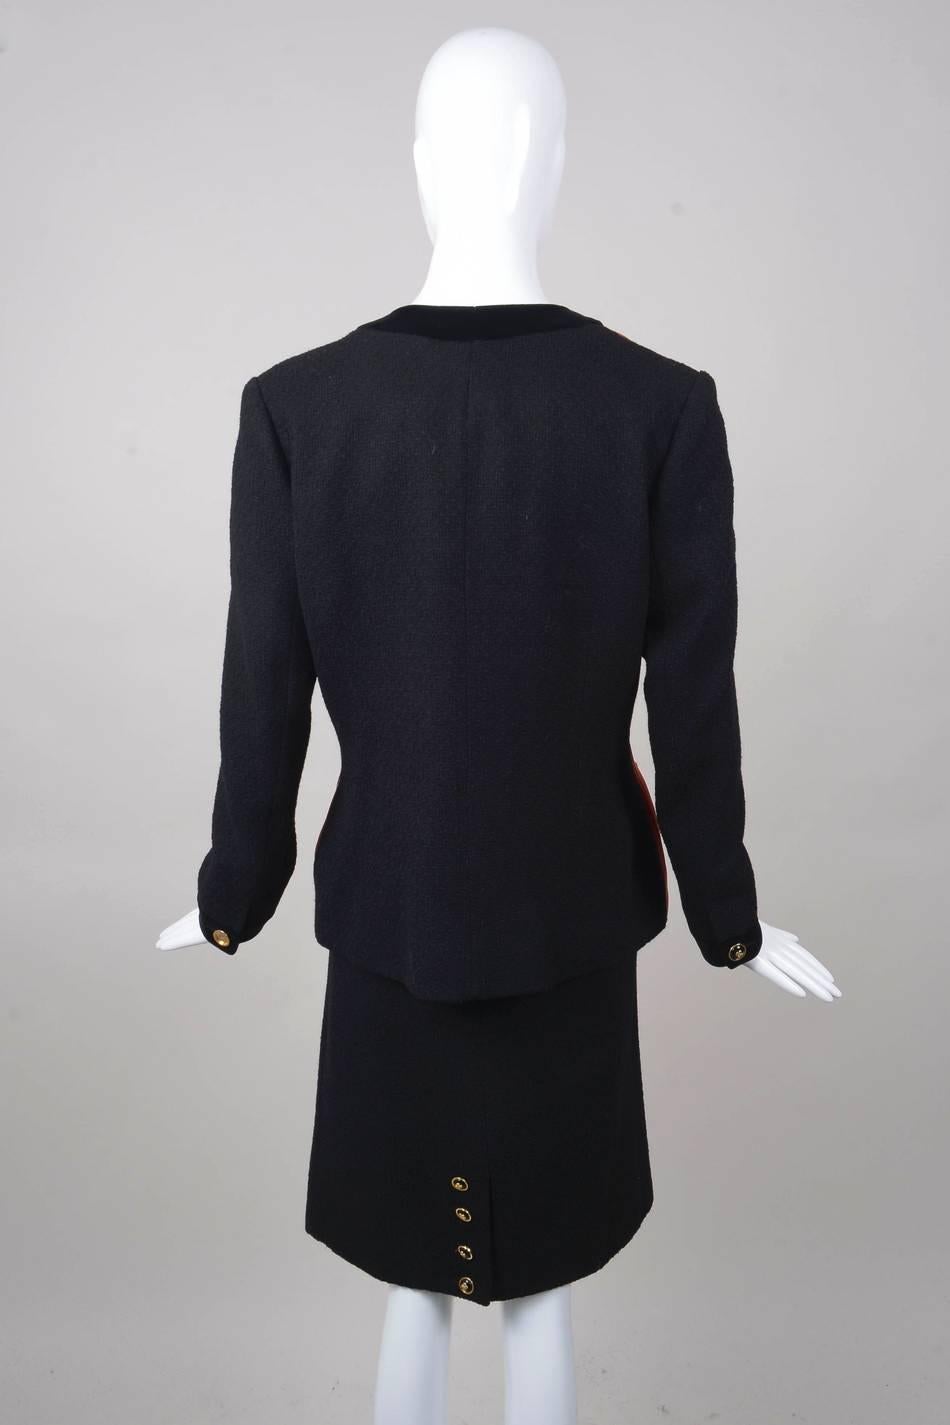 Women's Vintage Chanel Black & Orange Satin Panel Jacket & Knit Skirt Suit Set For Sale